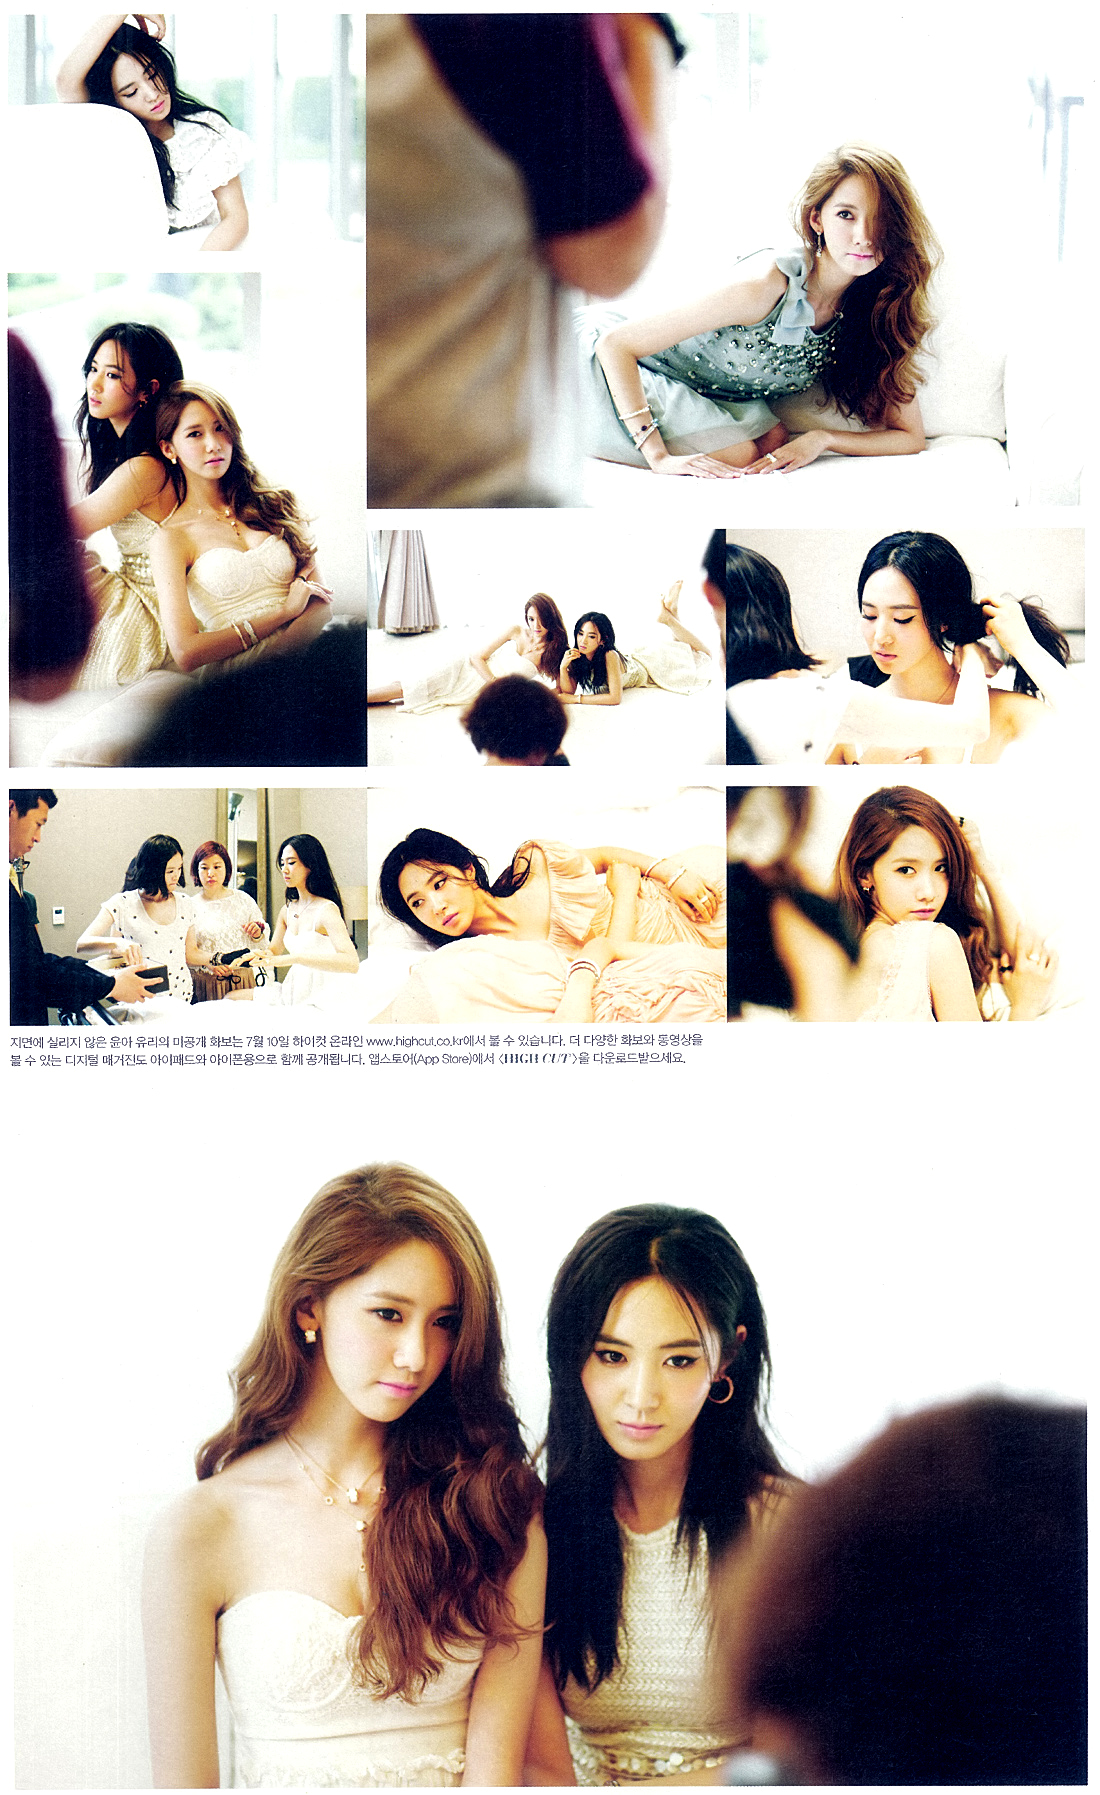 [PIC][03-07-2013]YoonA và Yuri xuất hiện trên ấn phẩm tháng 7 của tạp chí "HIGH CUT" 217D3D4151D4E40E04AF74